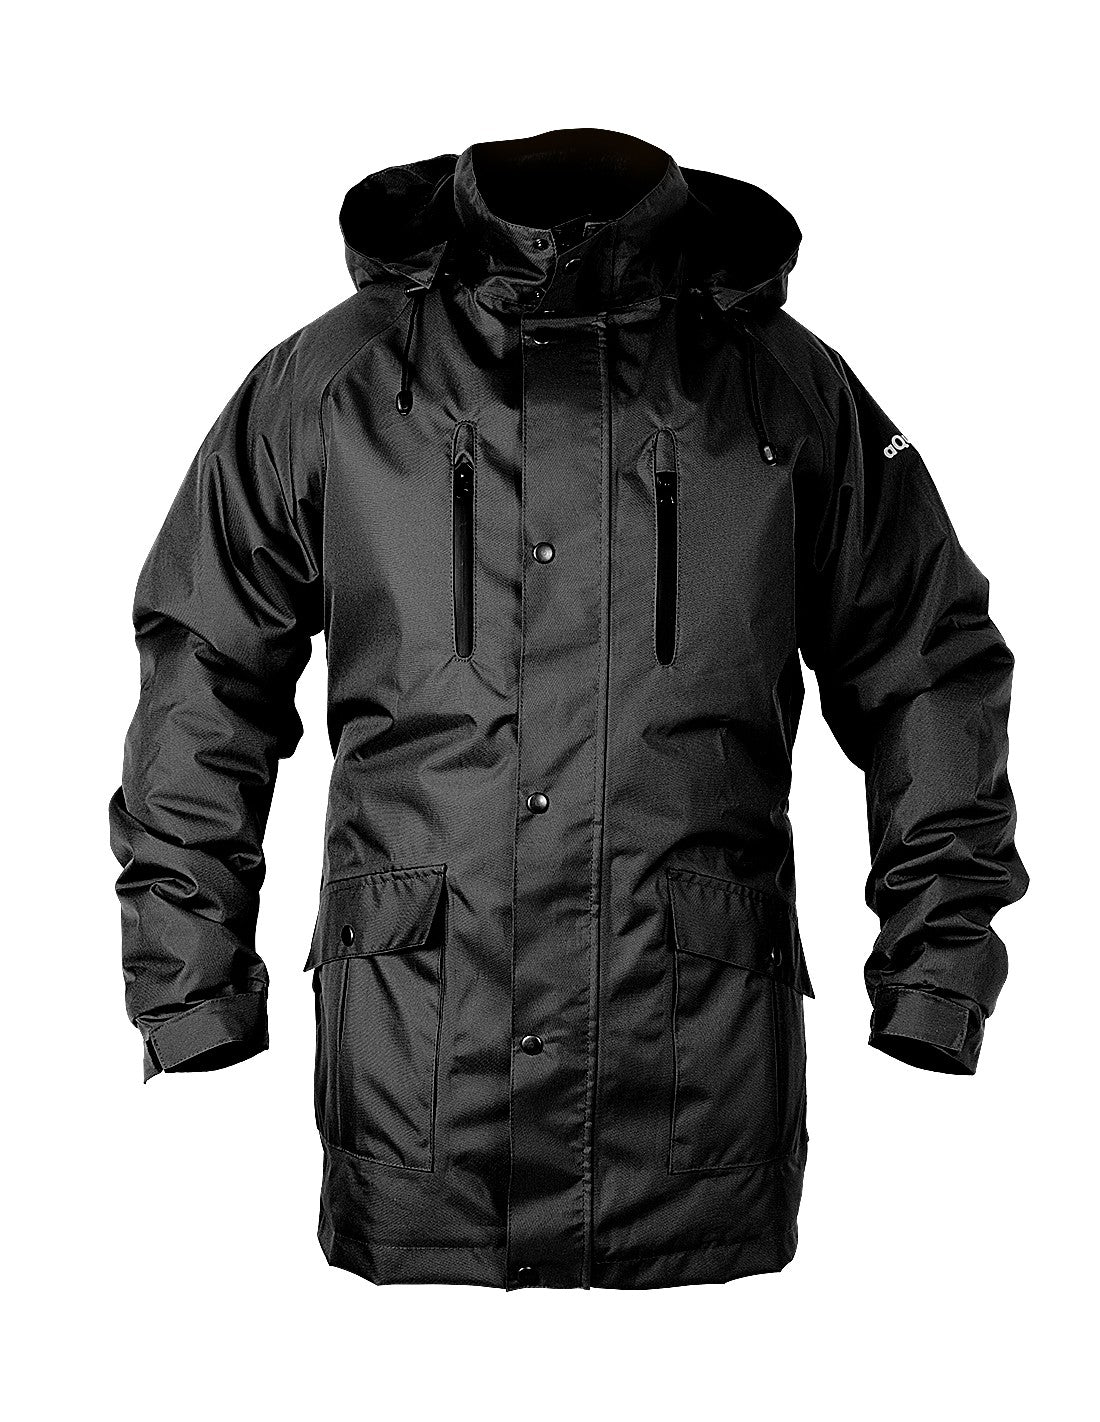 Waterproof Thermal Jacket - PROS